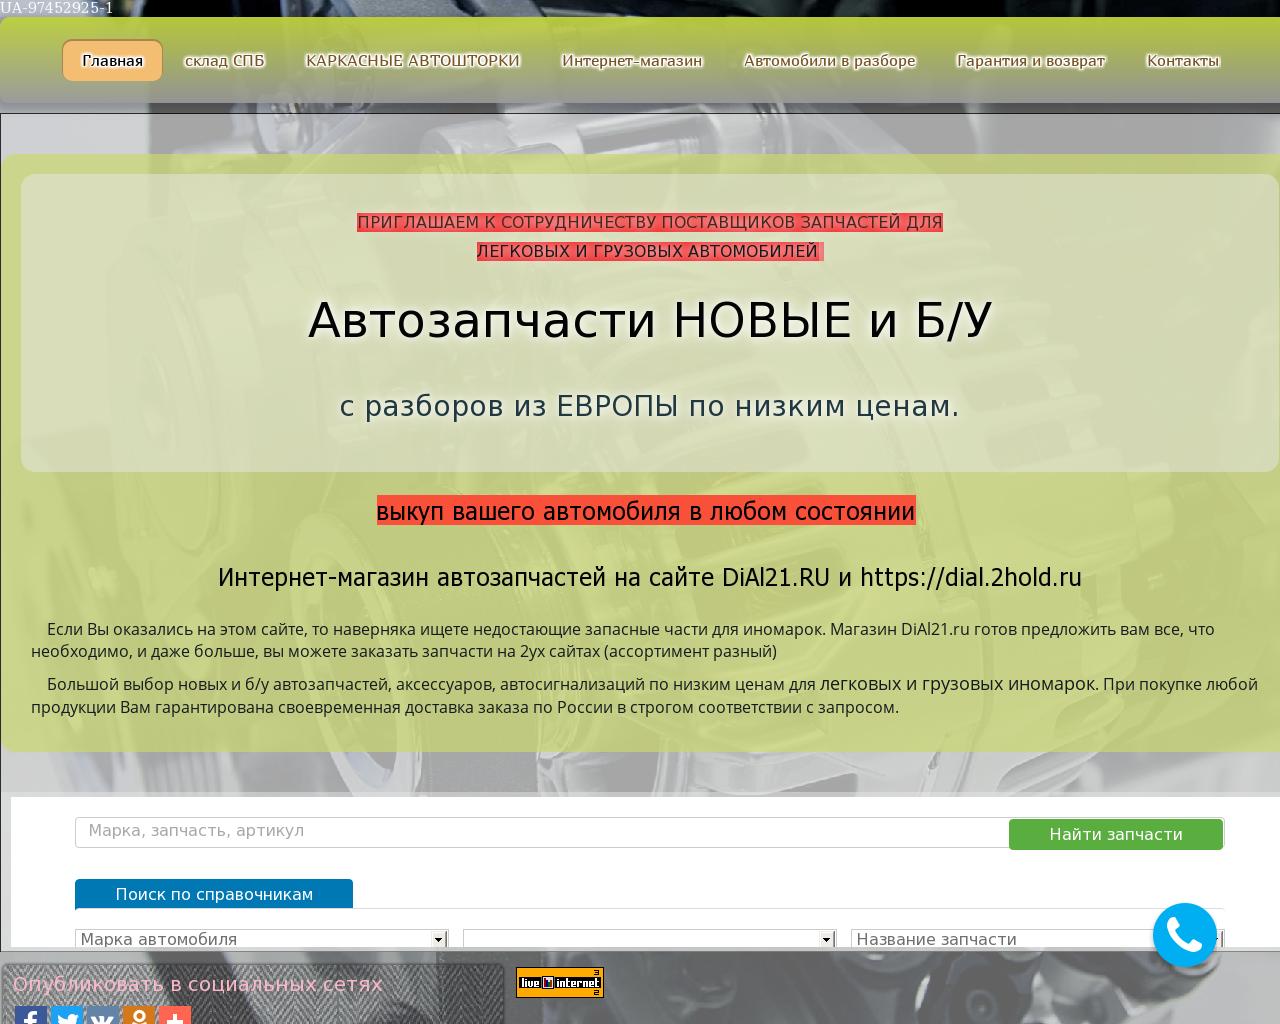 Изображение сайта dial21.ru в разрешении 1280x1024